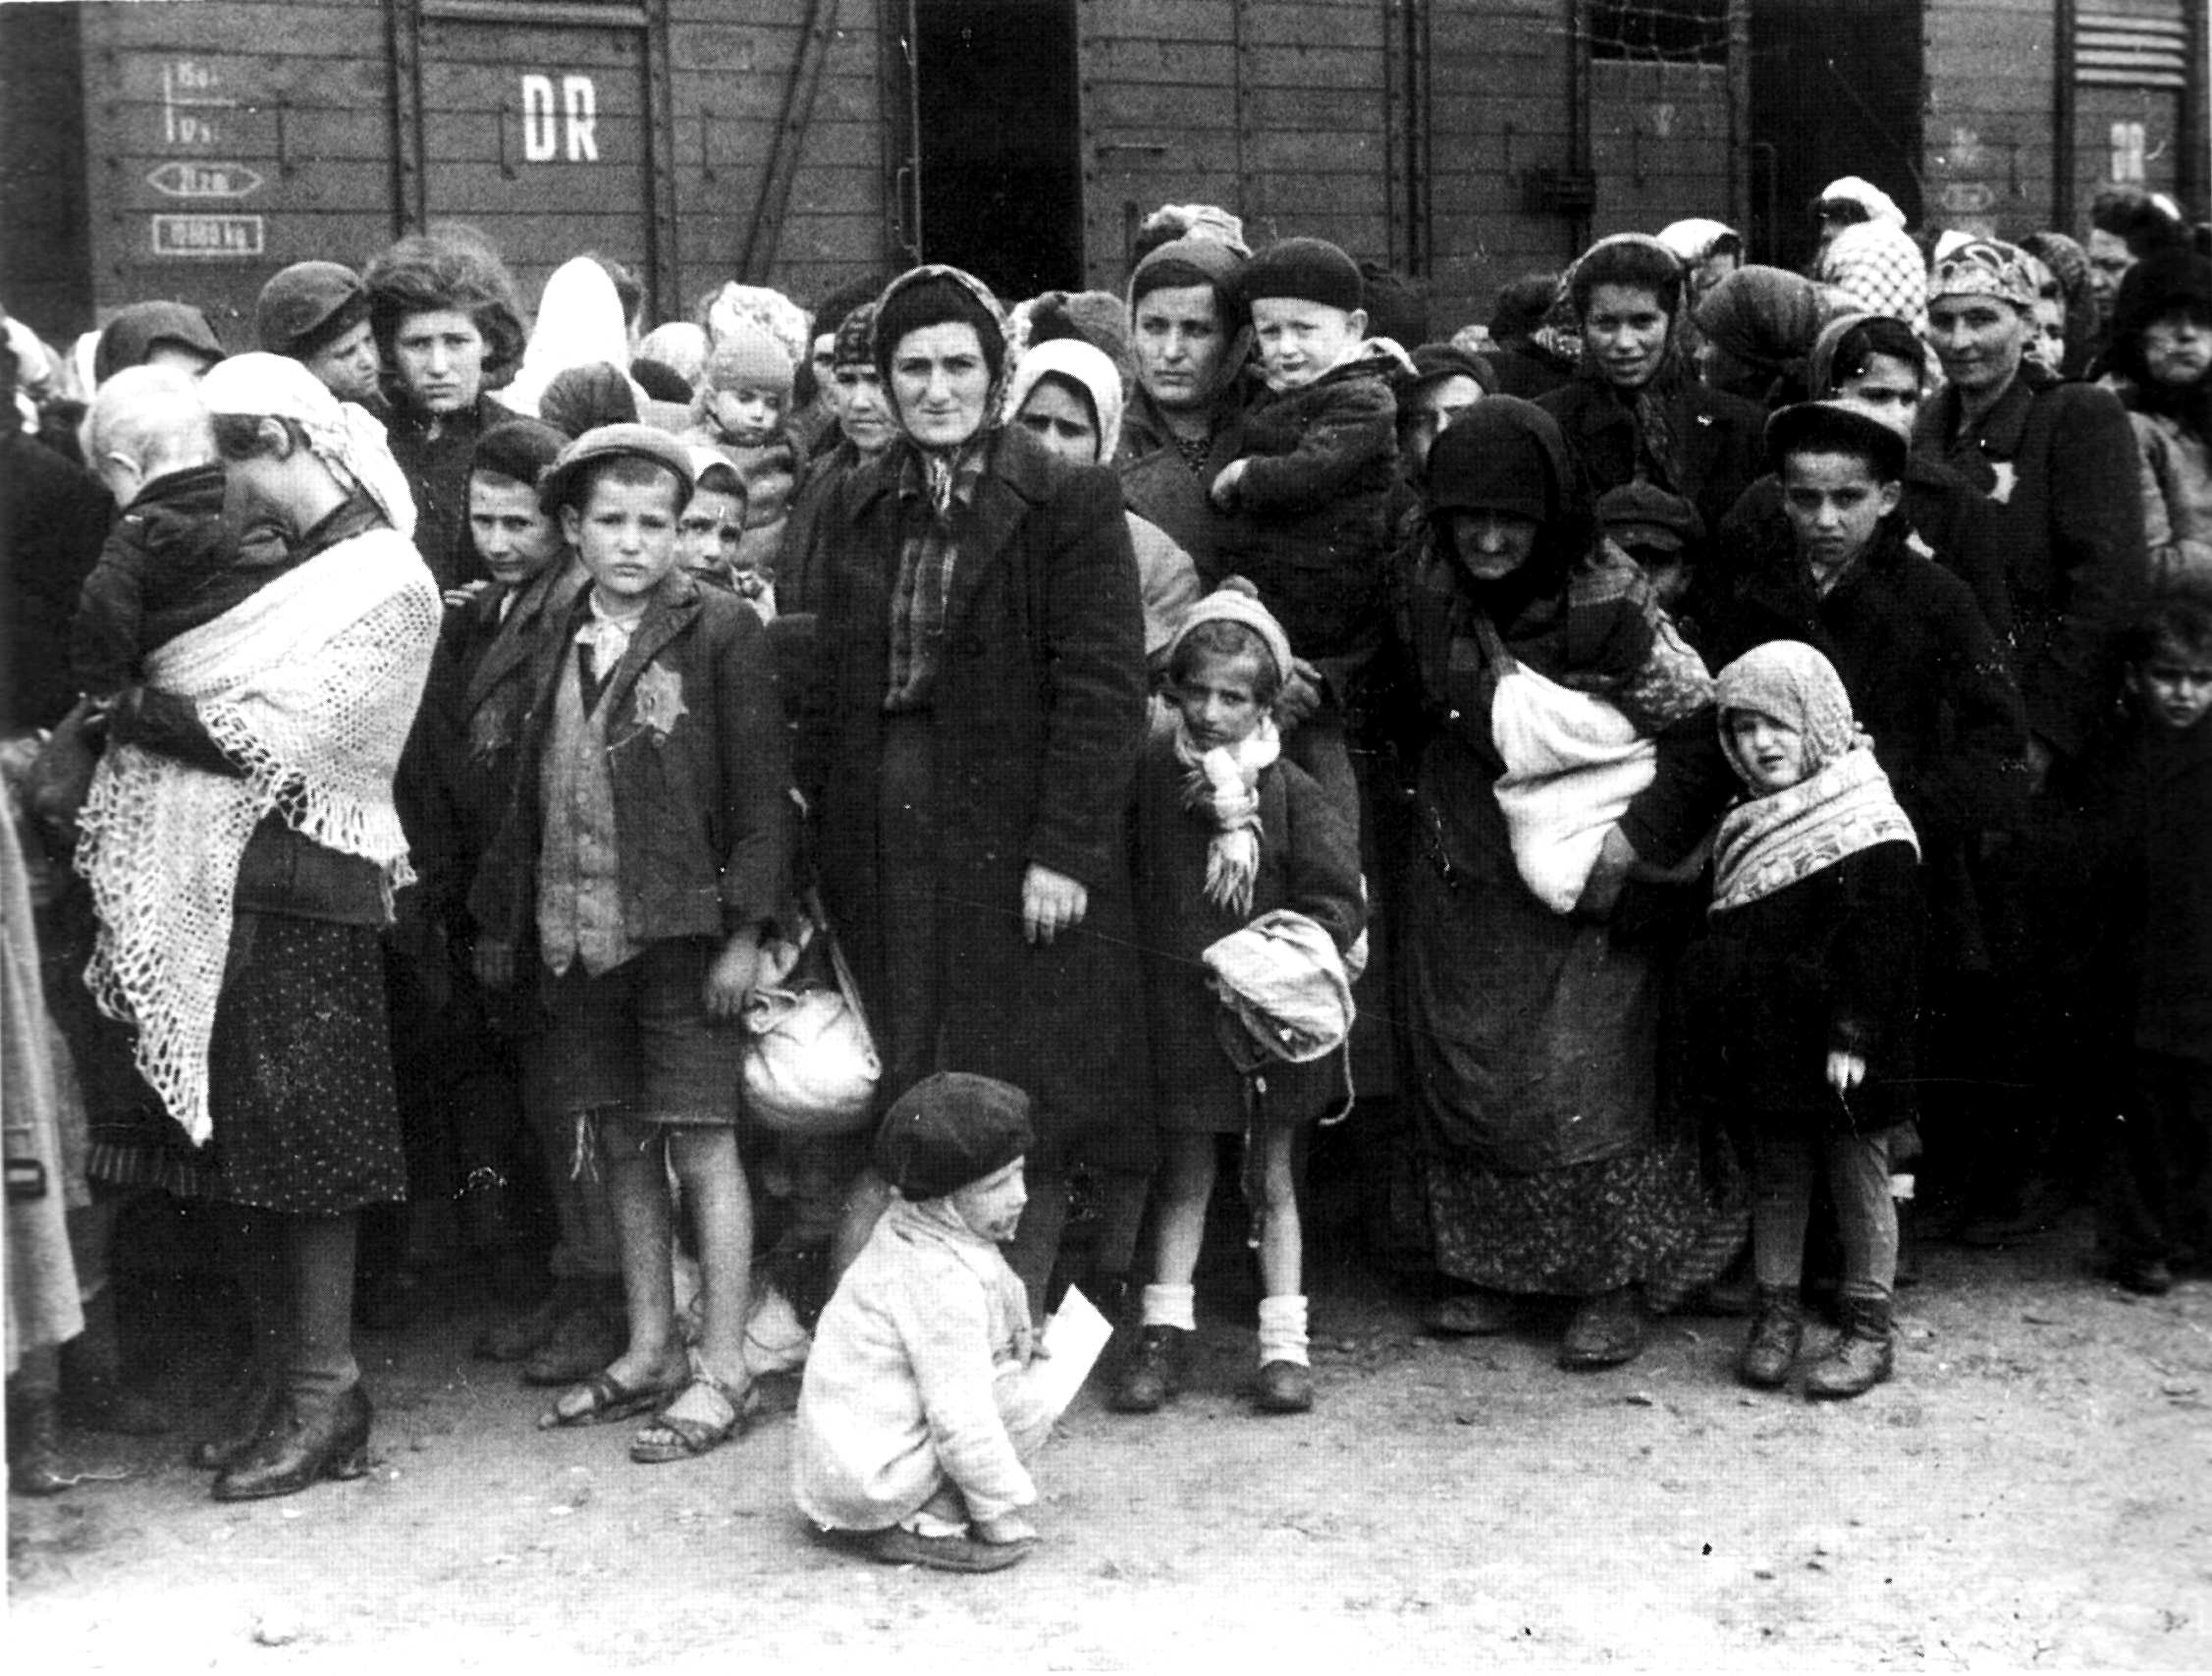 Datei:Bundesarchiv Bild 183-N0827-318, KZ Auschwitz, Ankunft ungarischer Juden.jpg